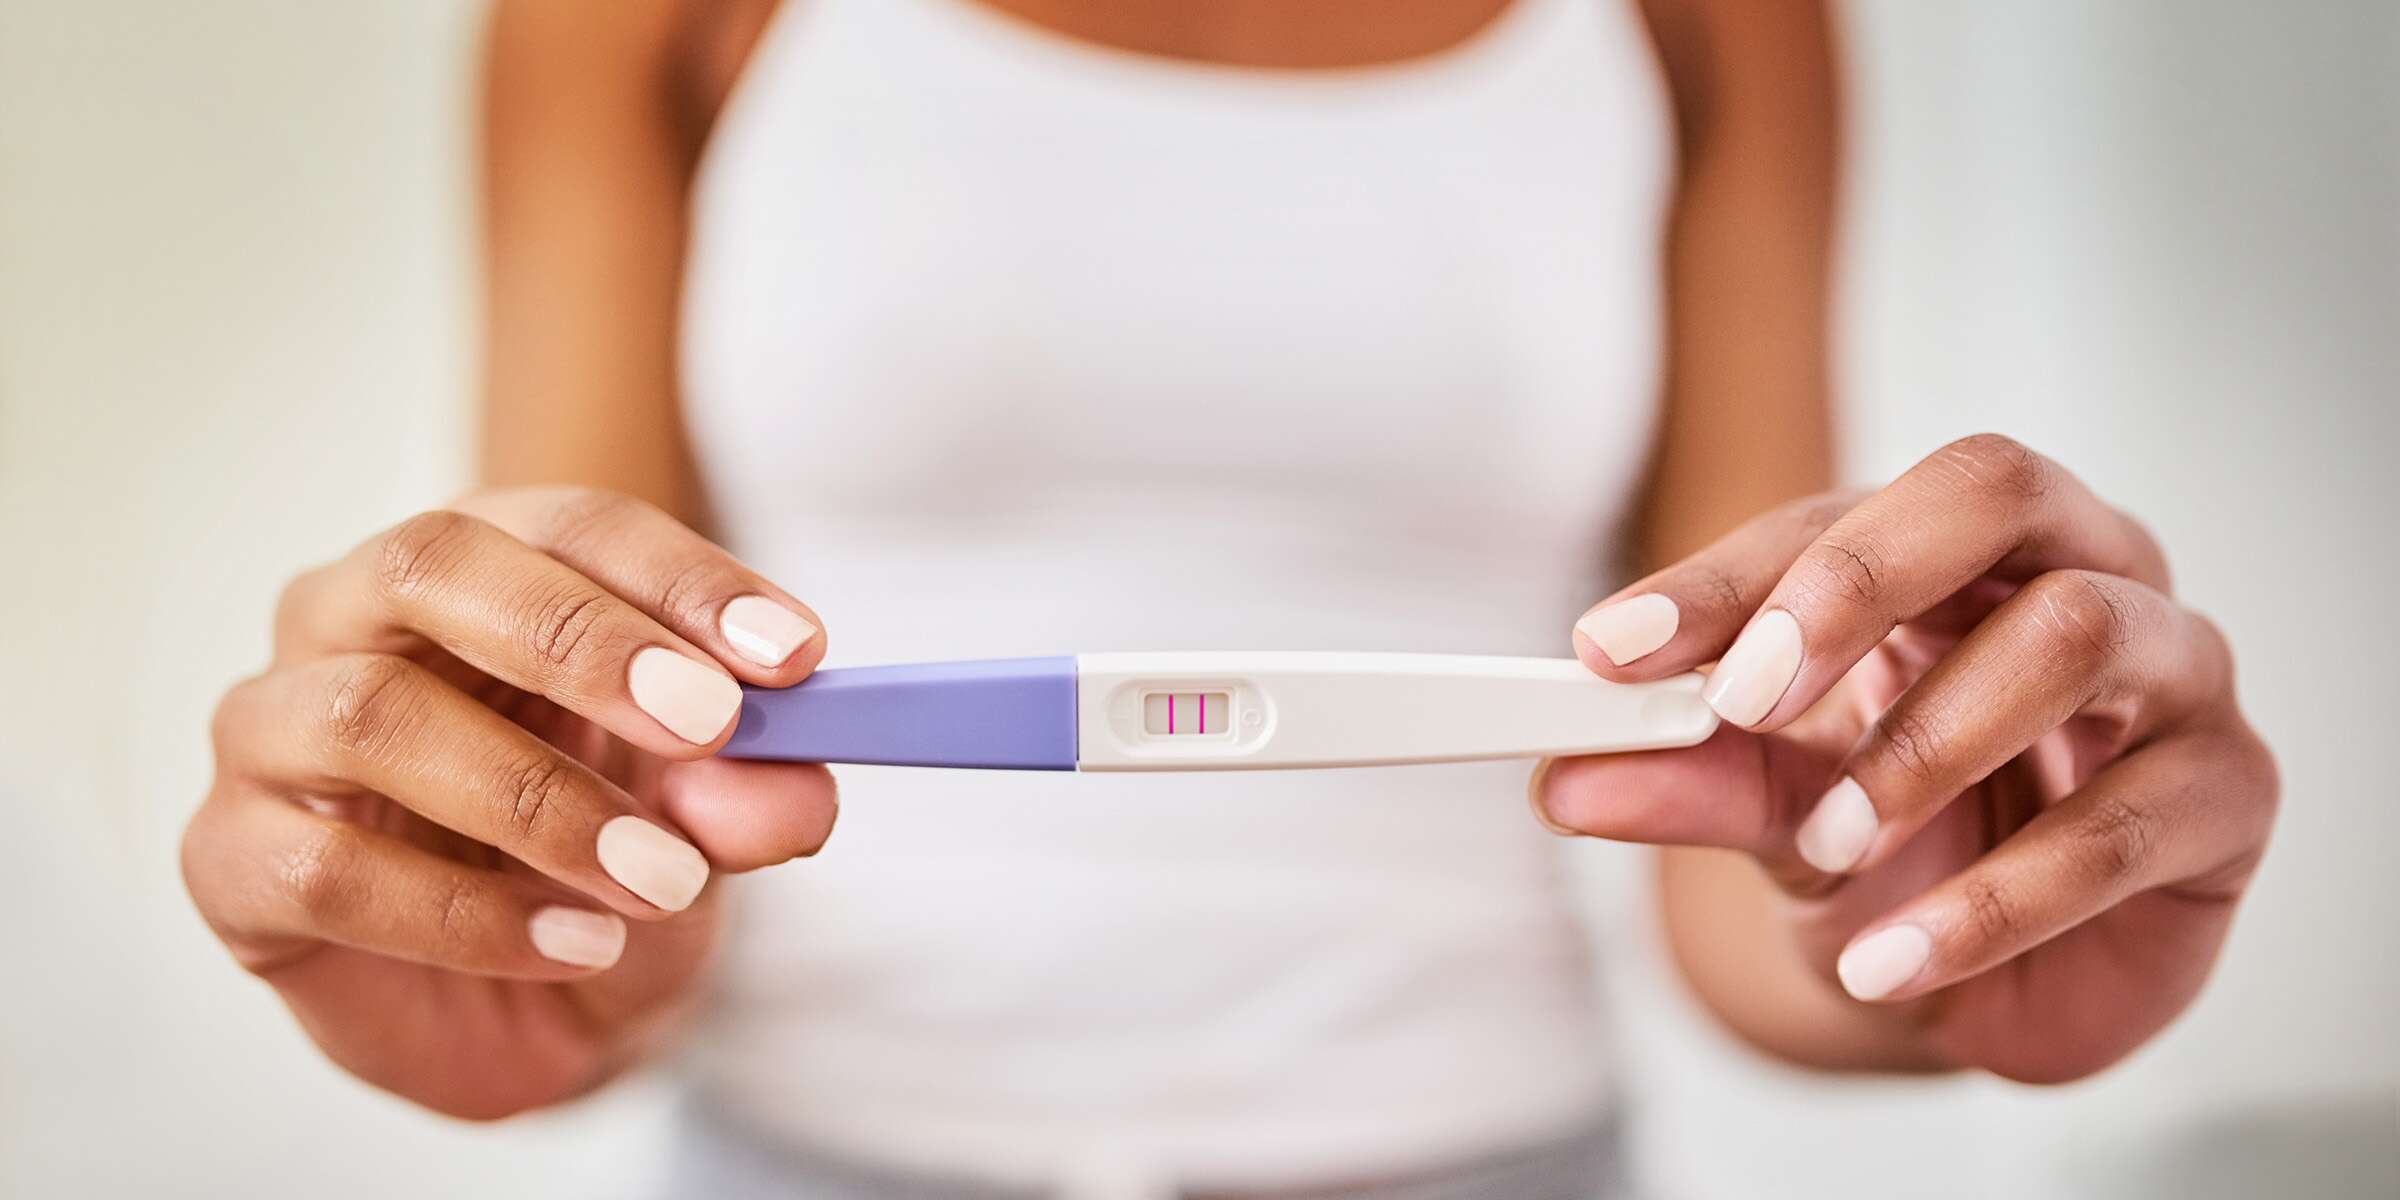 كيف تعرف أنك حامل؟ دليلك الشامل لإستكشاف أعظم مفاجأة في حياتك